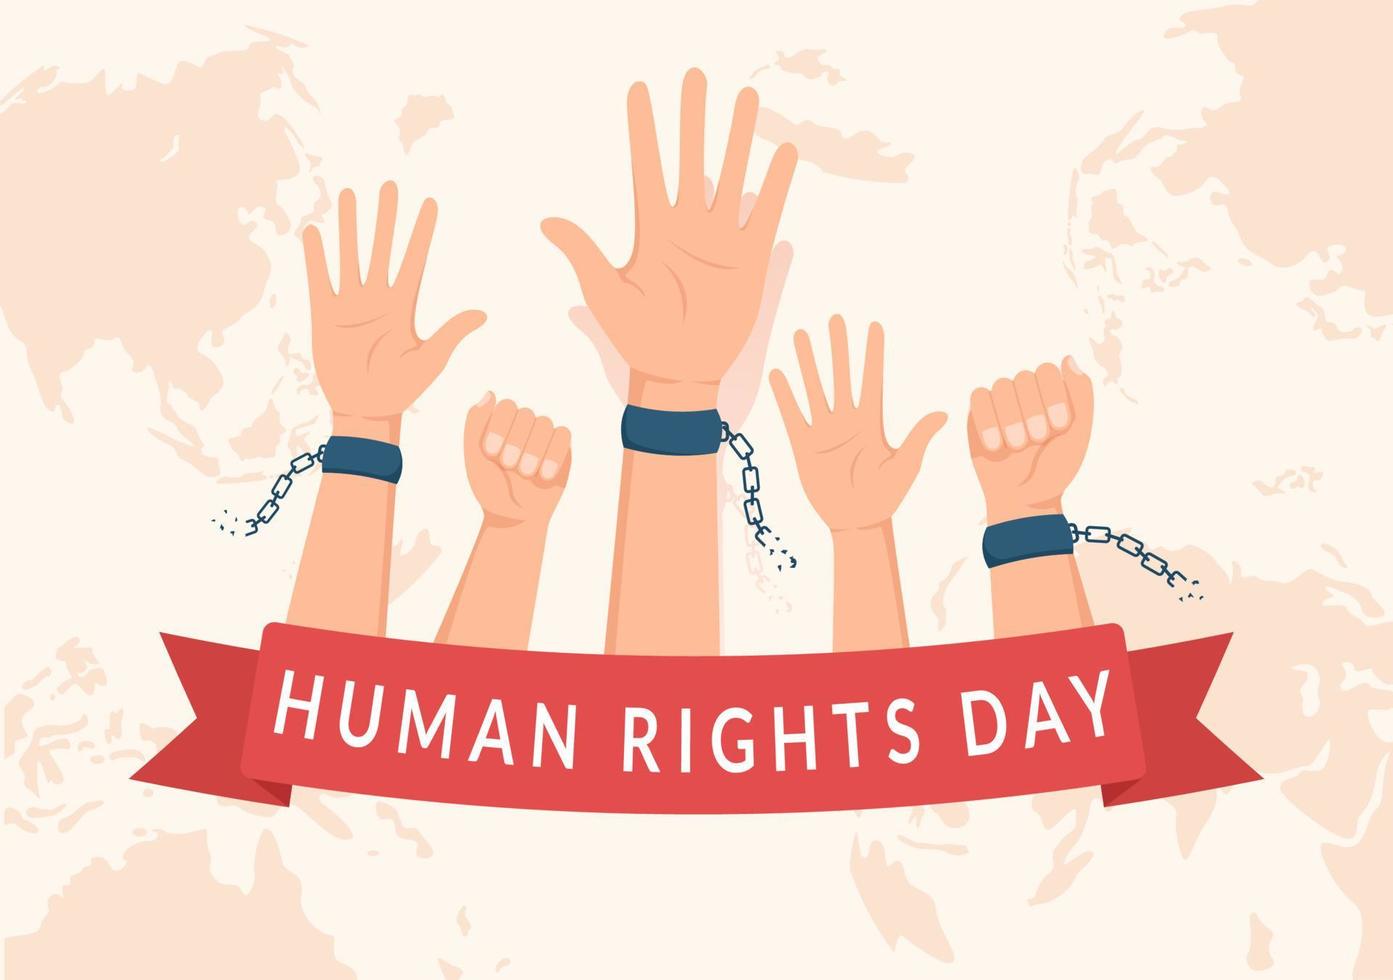 menschenrechtstag vorlage handgezeichnete flache karikaturillustration mit erhobenen händen, die ketten brechen oder handdesign halten vektor